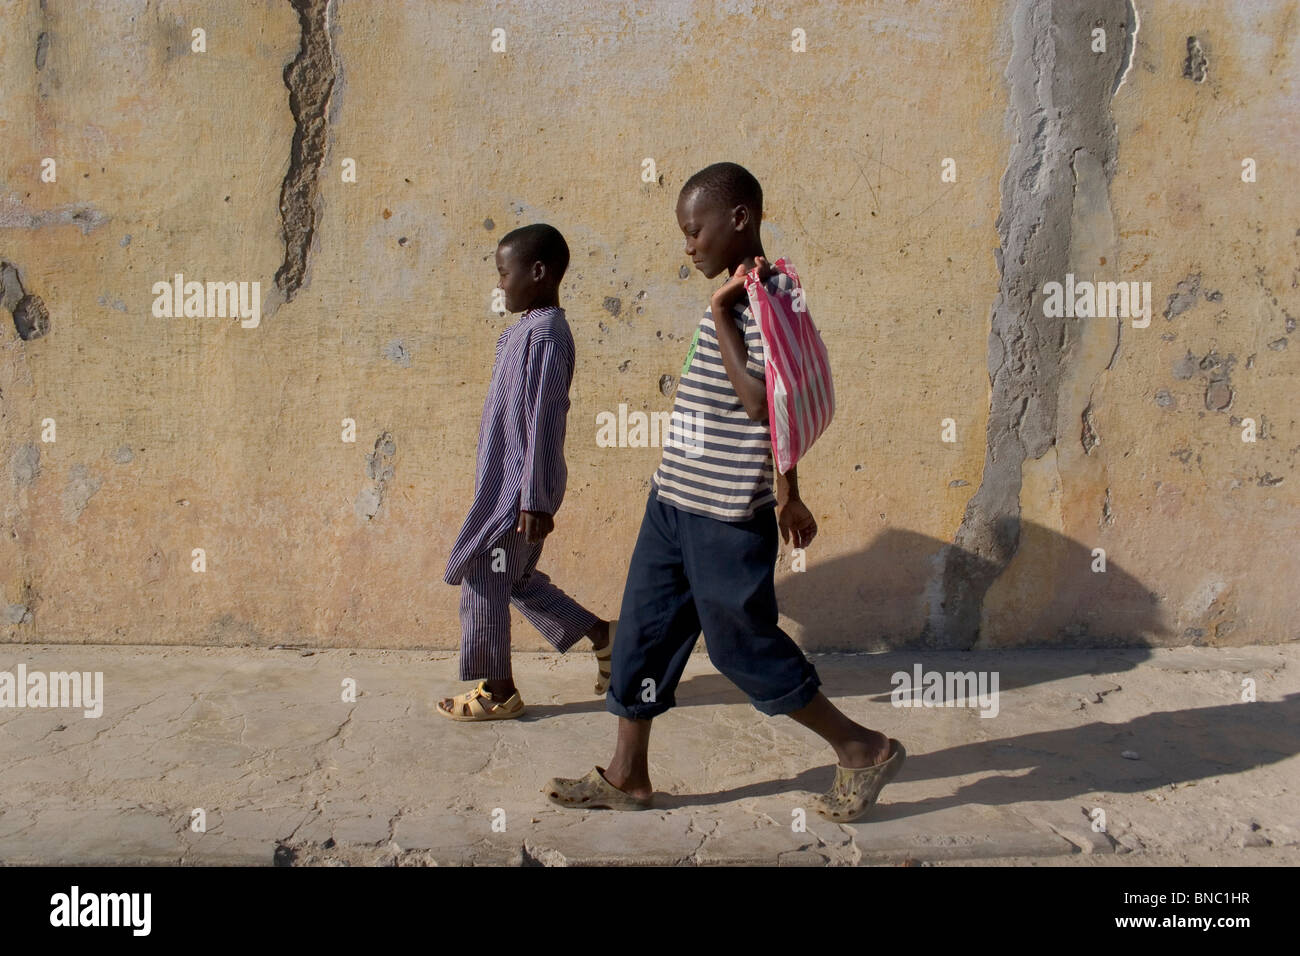 Mozambican boys walking along street, Ilha de Mozambique. Stock Photo